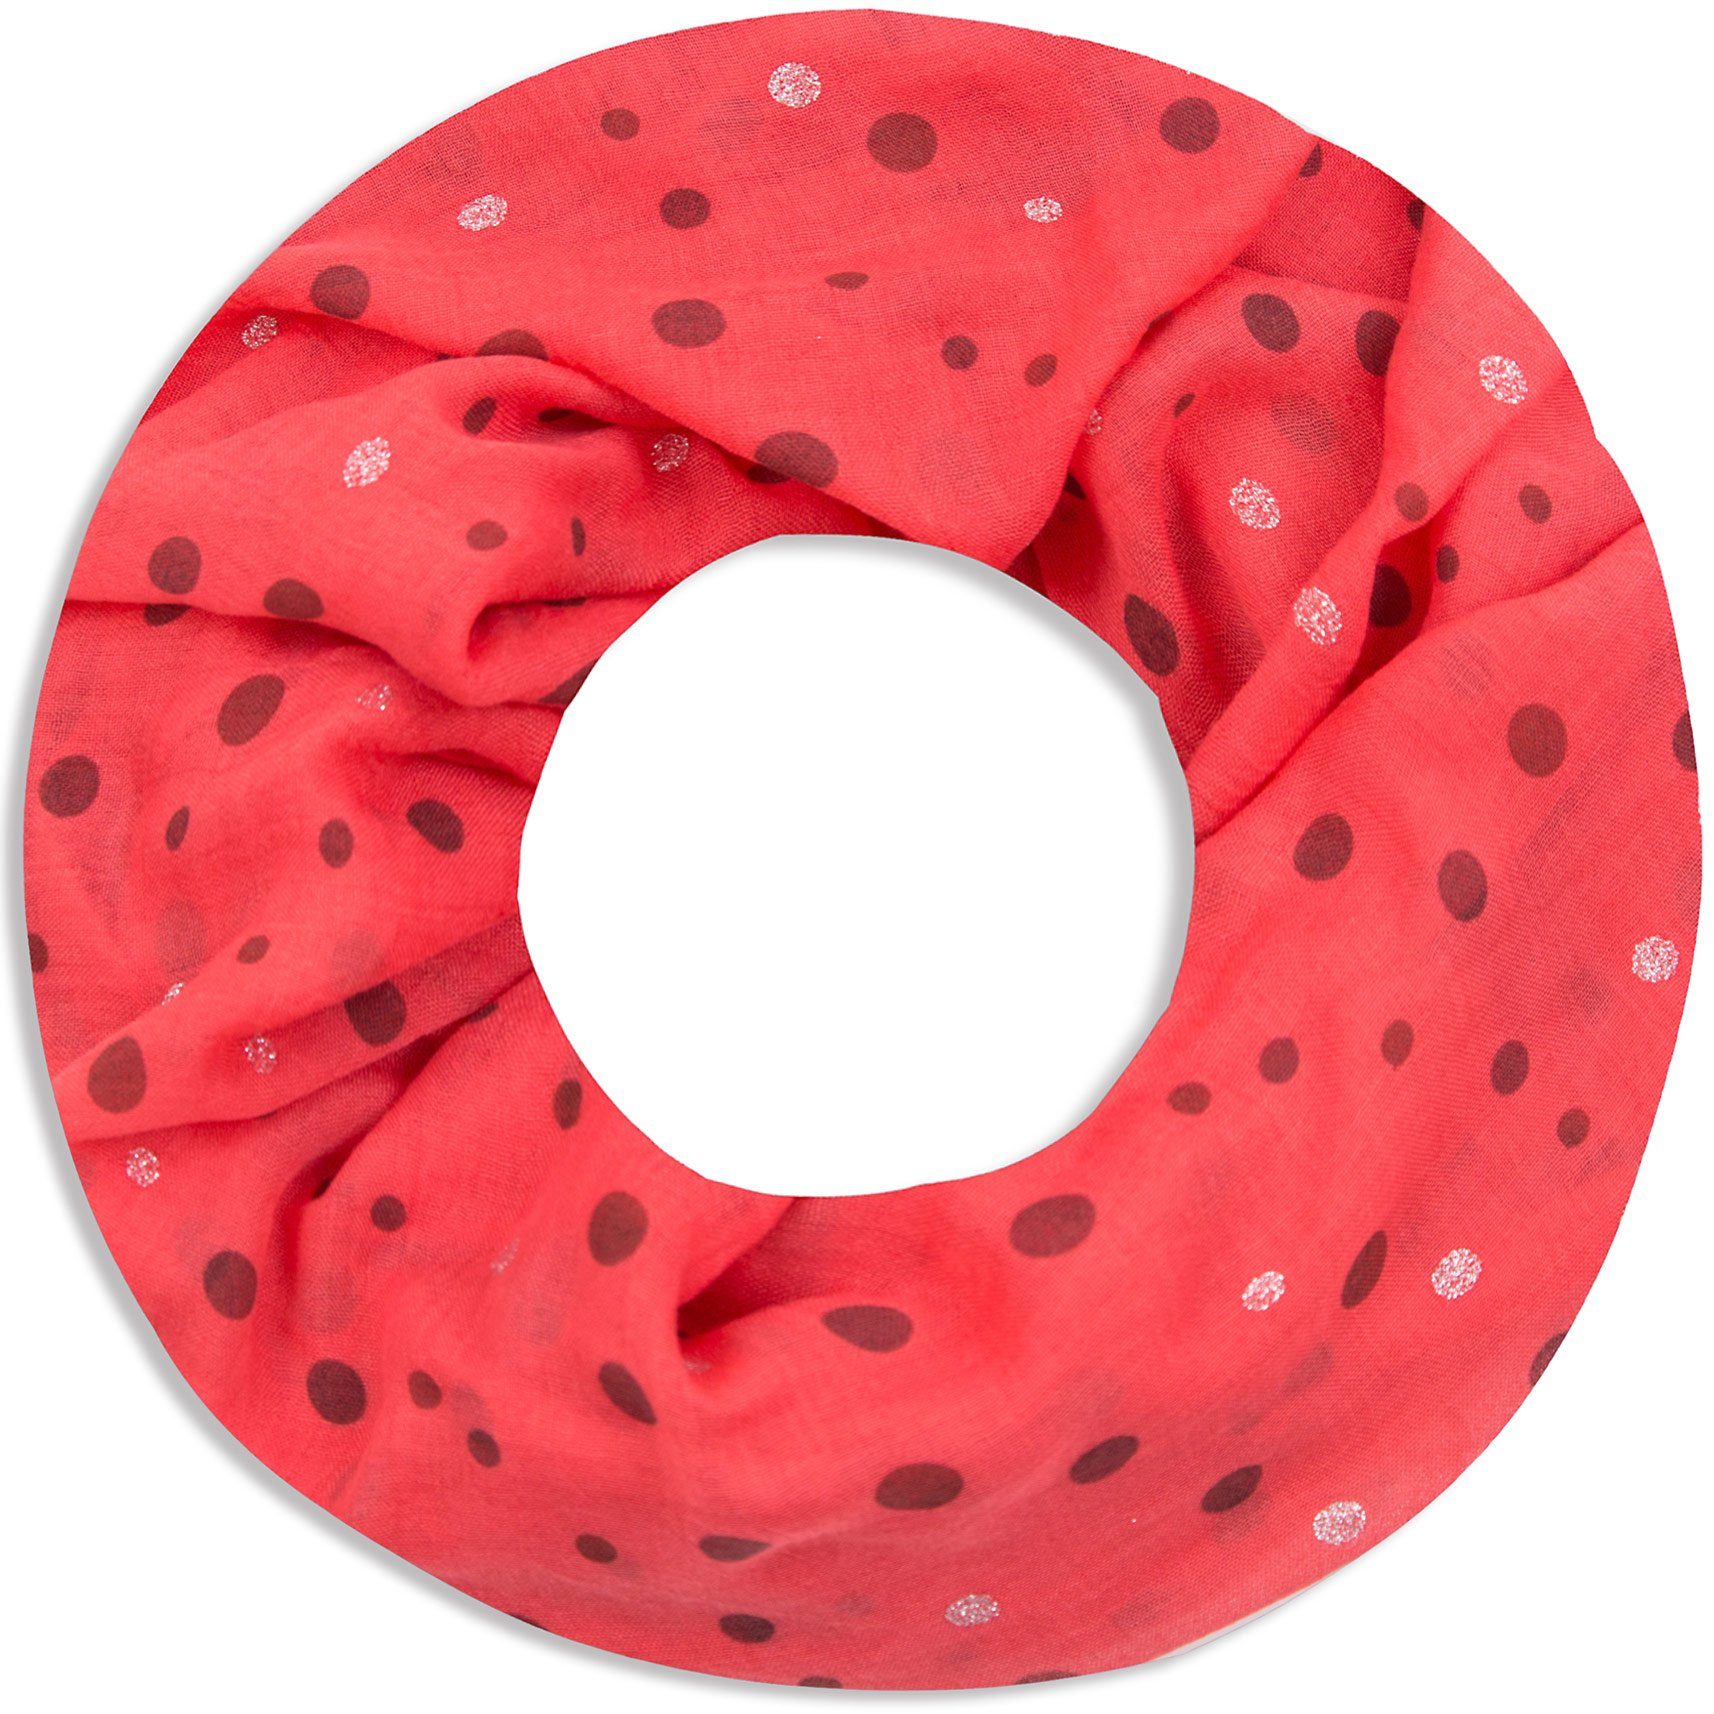 Faera Loop, Damen Schal luftig und weich mit erfrischendem Punkt-Muster Loopschal Rundschal rot